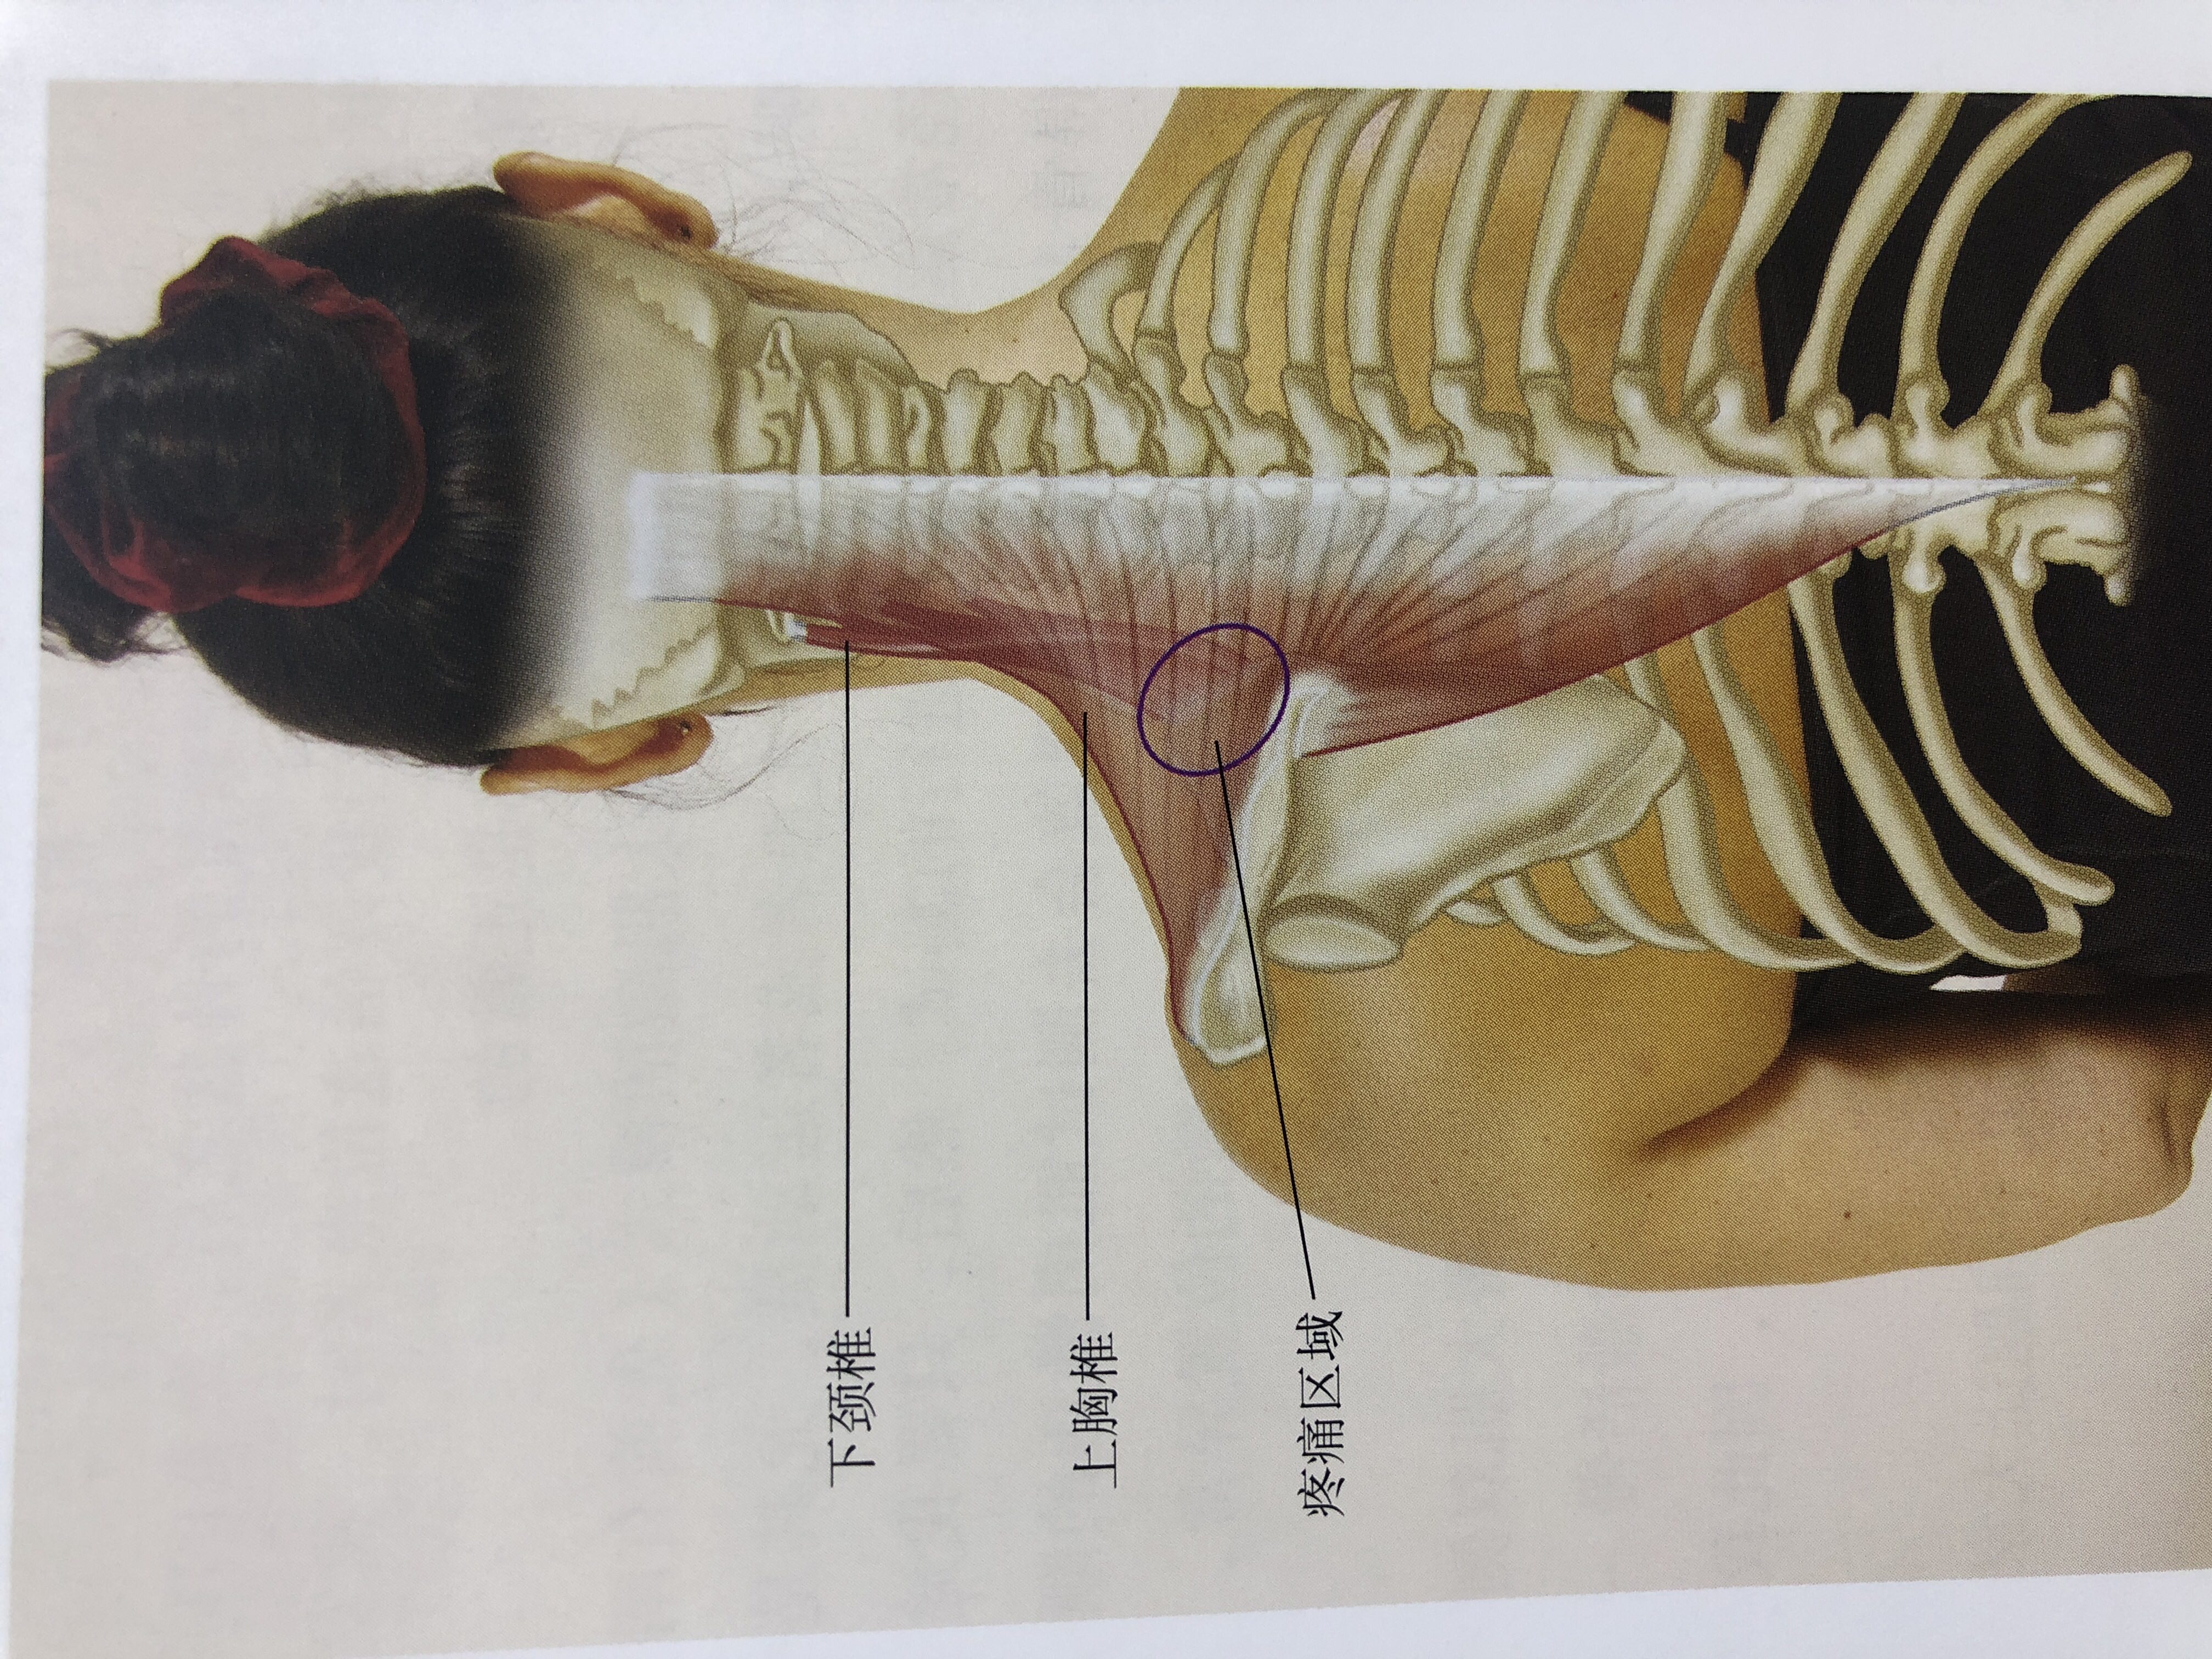 第三:肩胛骨要紧贴胸廓